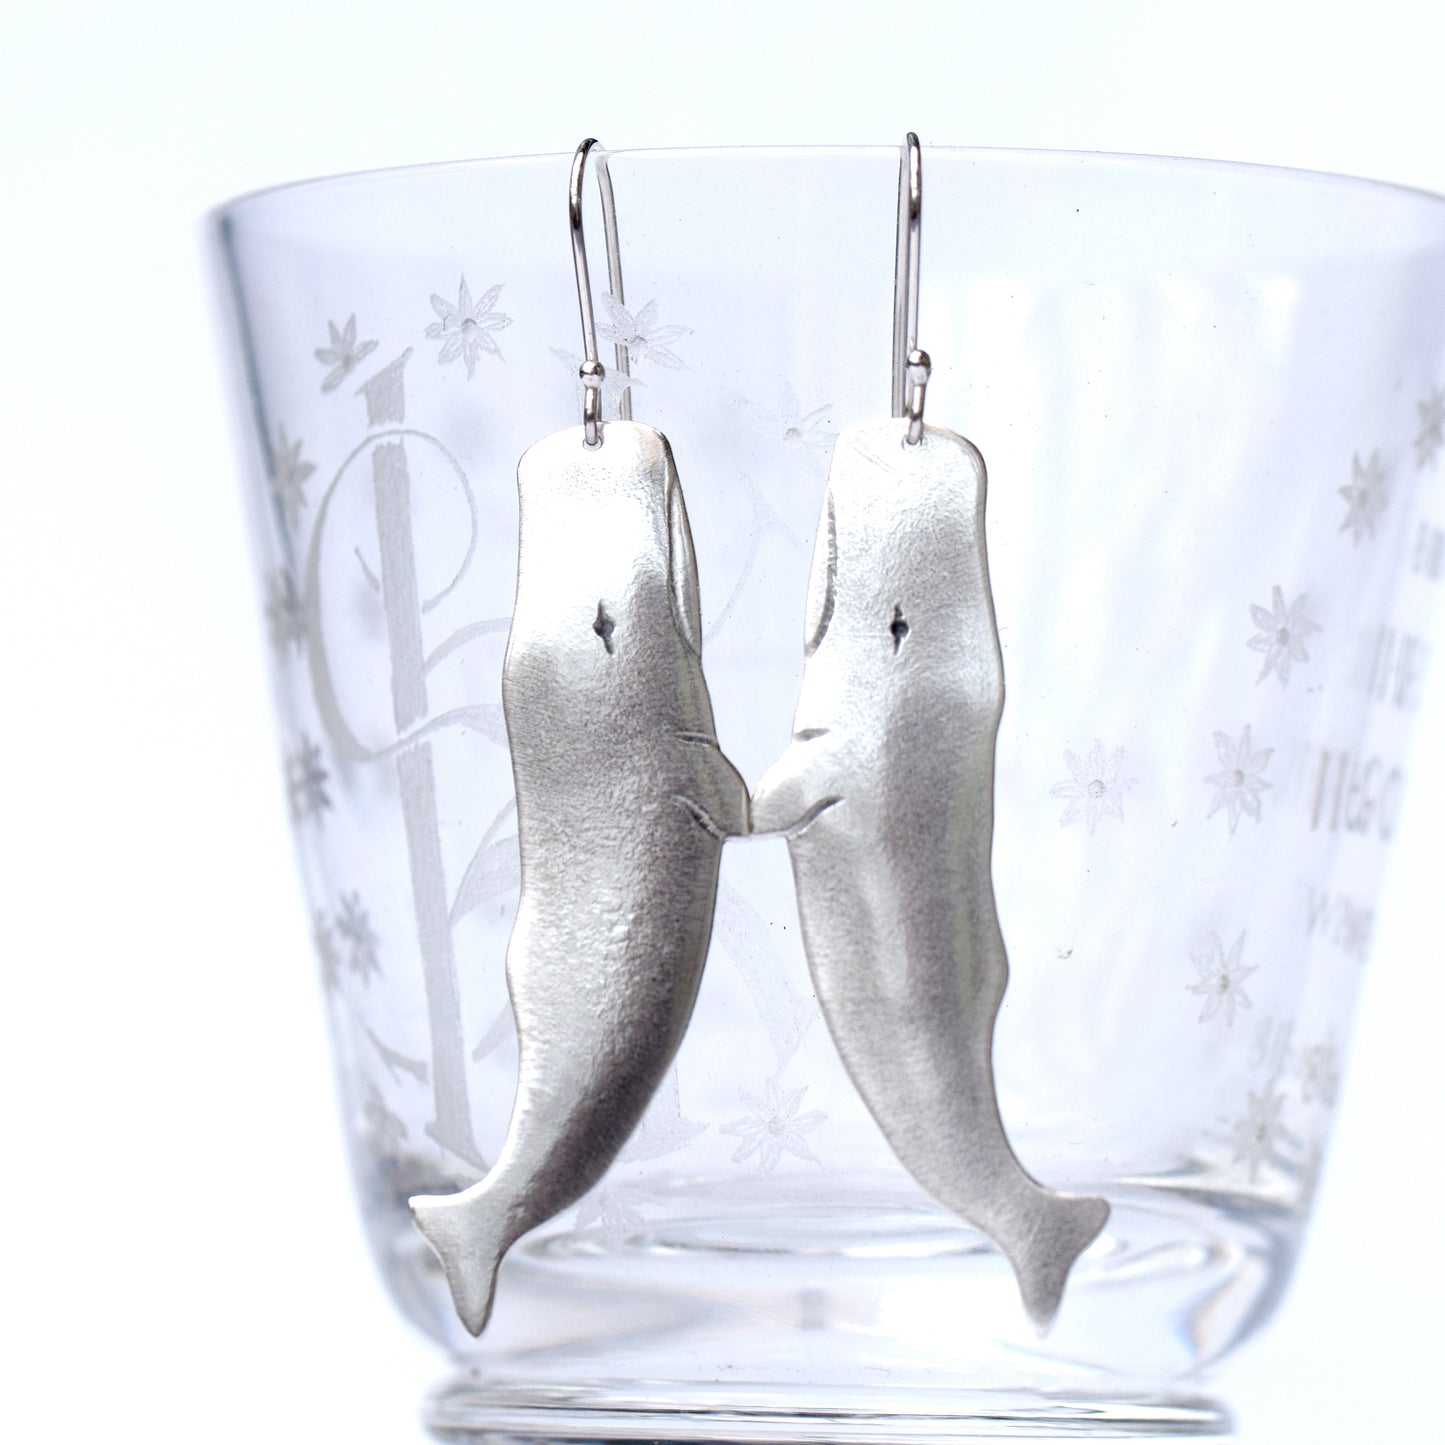 Sperm whale dangle earrings in Sterling silver